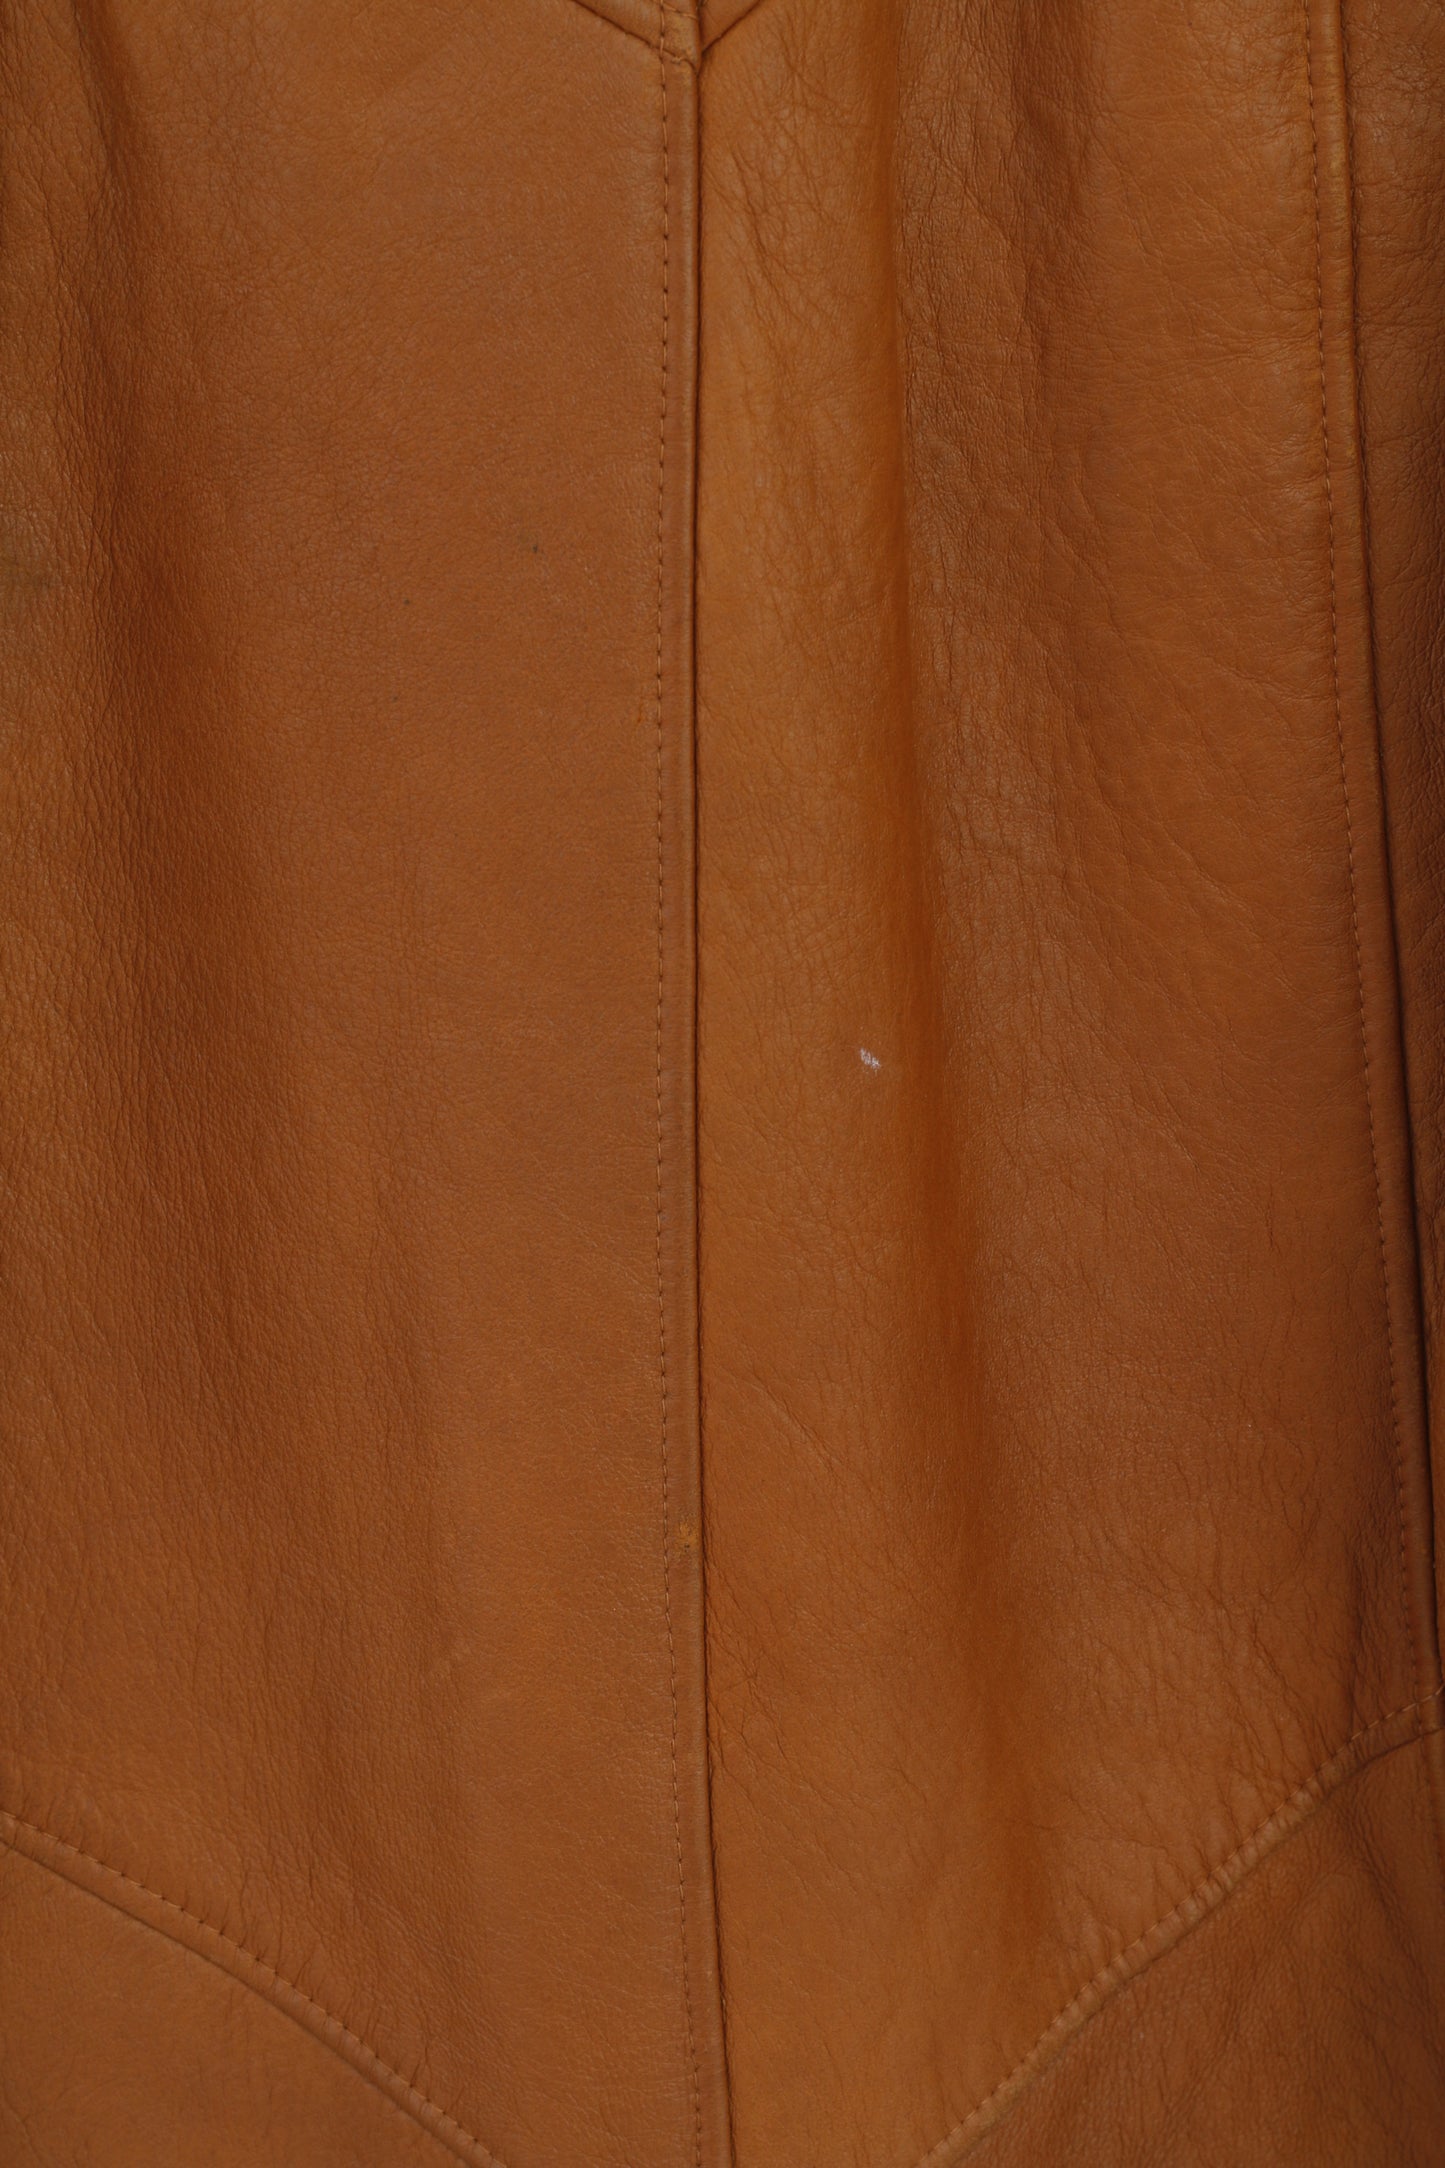 Giacca Frapelz modello donna L in pelle marrone vintage anni '90 con bottoni e parte superiore lunga